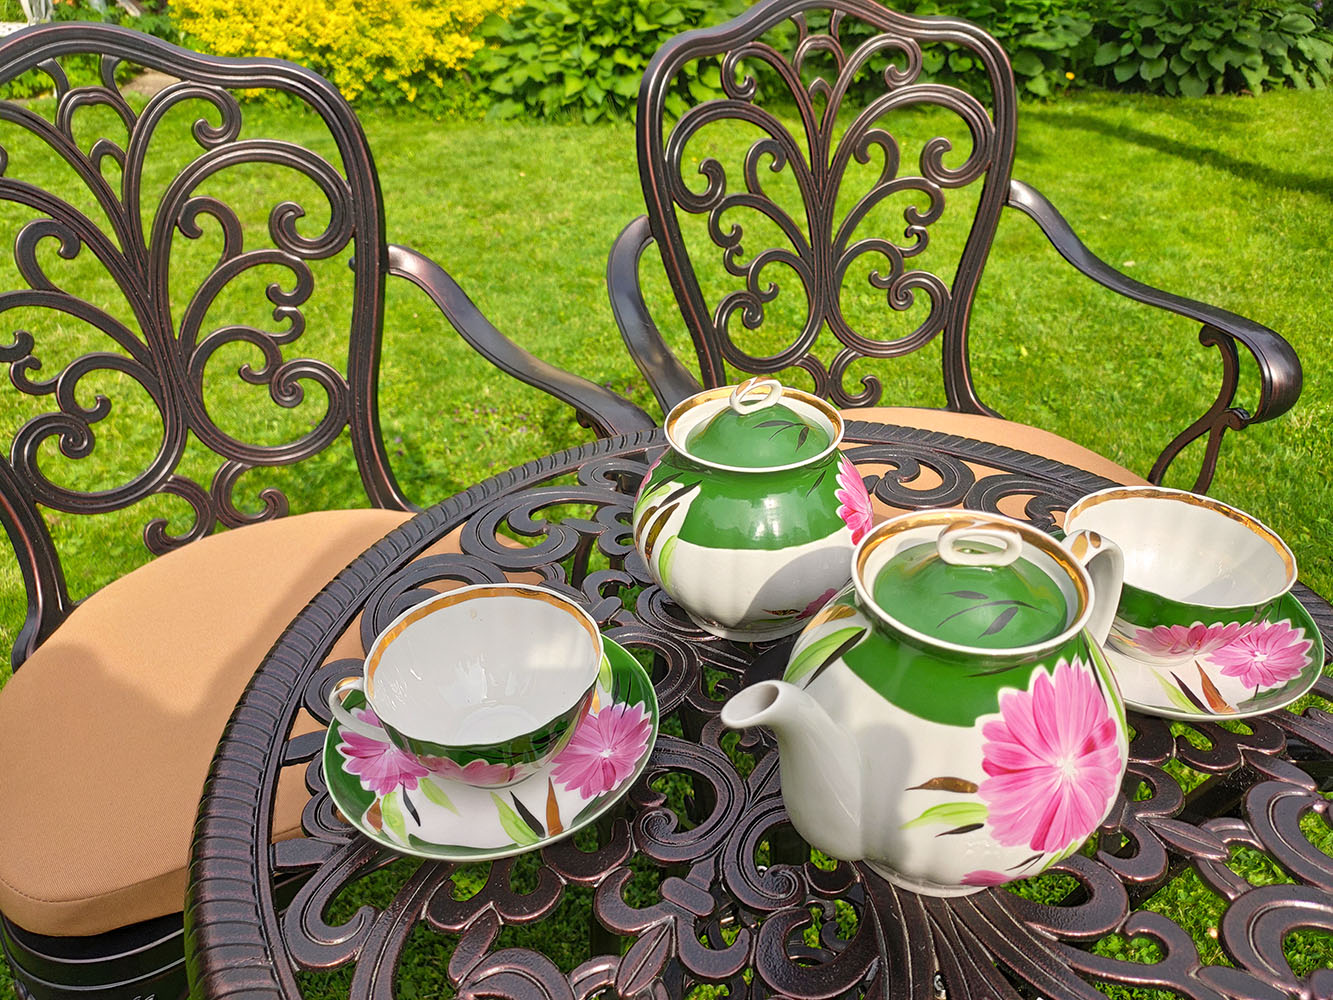 Чайный комплект литой мебели для сада в беседку, уличные столы и стулья для пансионатов и летних кафе бистро, Комплект кованой мебели на дачу на крыльцо.